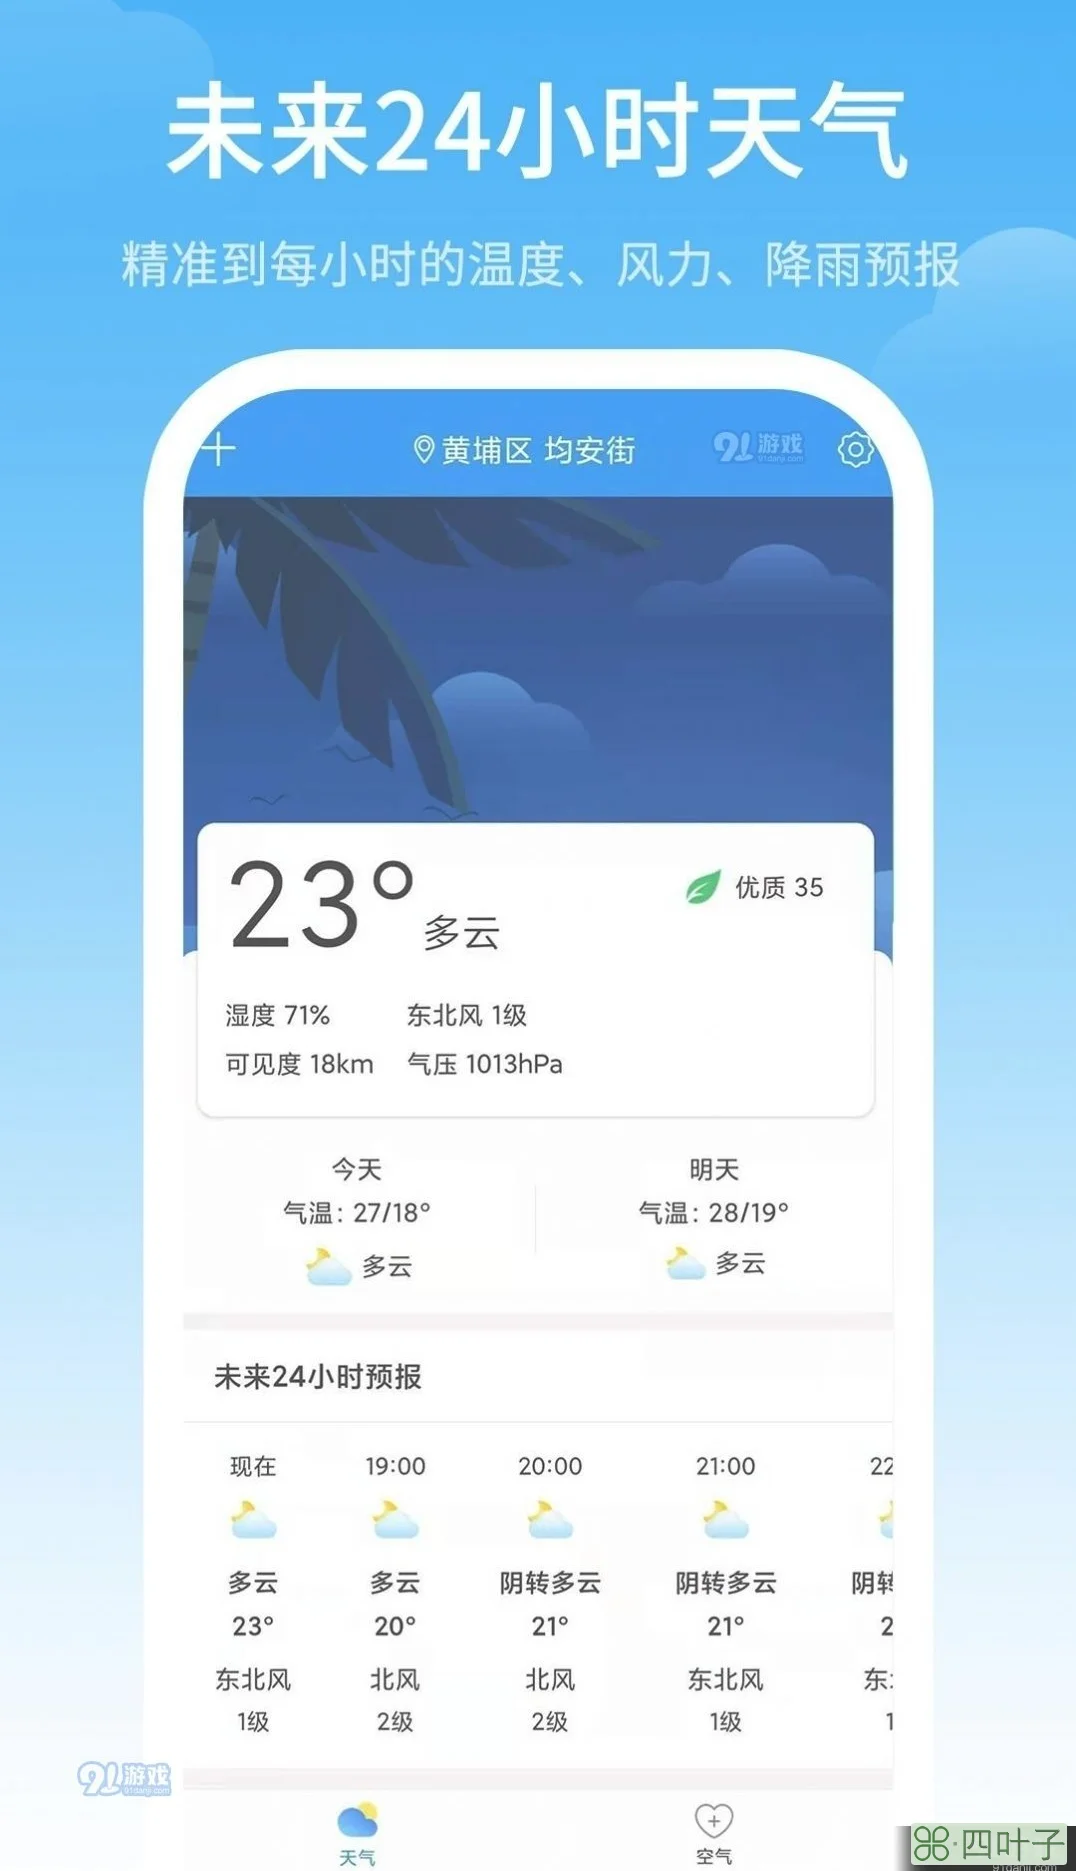 最精准天气预报软件排名第一天气预报app哪个好